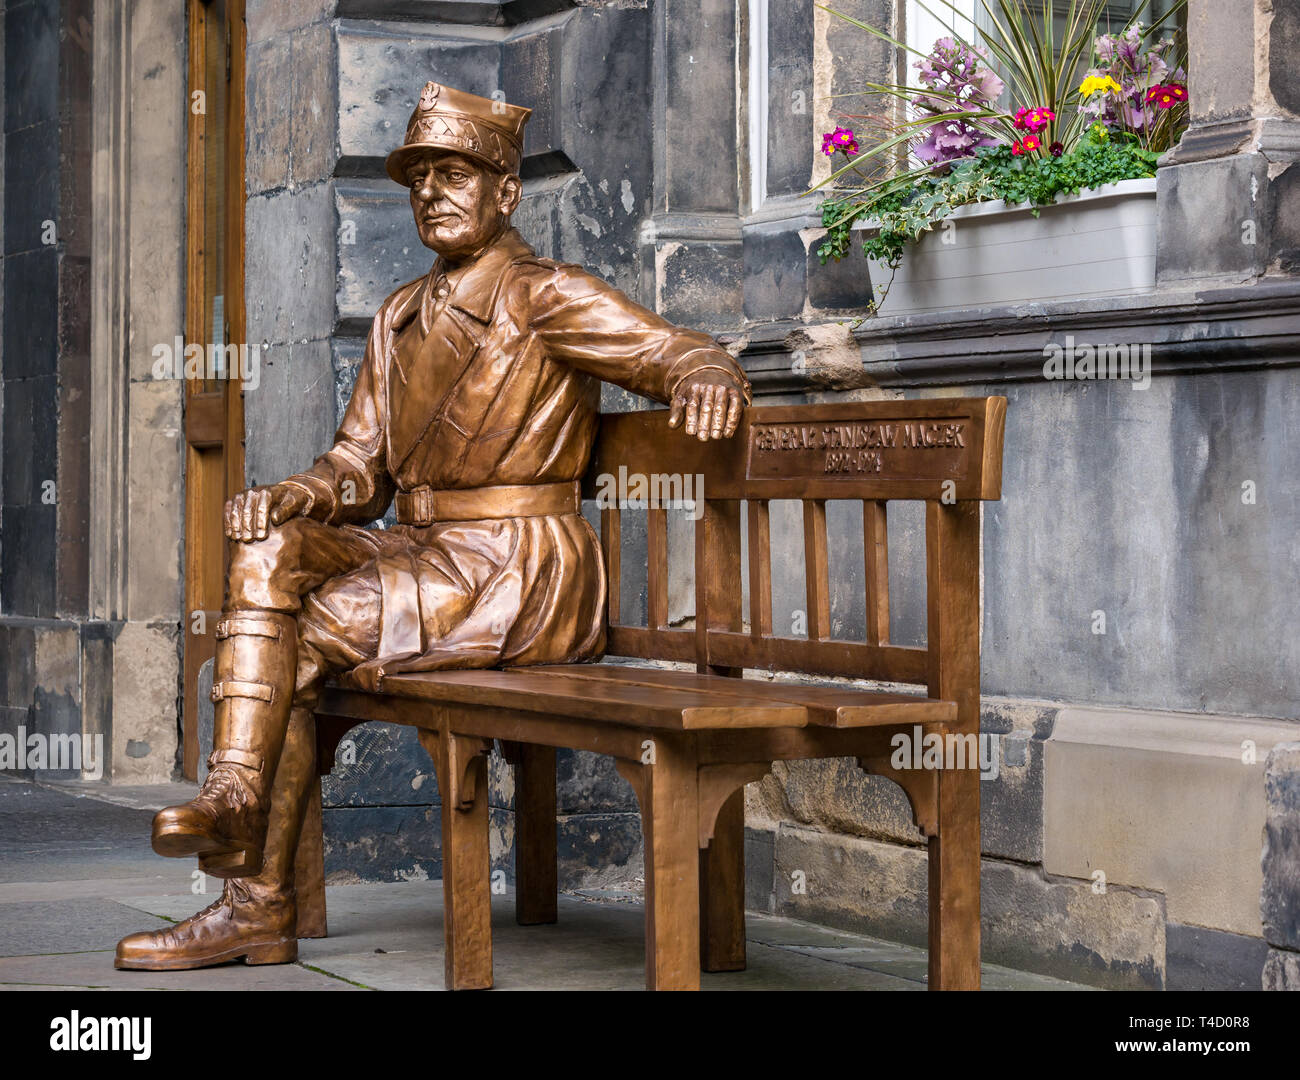 L'oeuvre de la sculpture en bronze le général Maczek, chef de char polonais dans la seconde guerre mondiale, City Chambers, Royal Mile, Édimbourg, Écosse, Royaume-Uni Banque D'Images